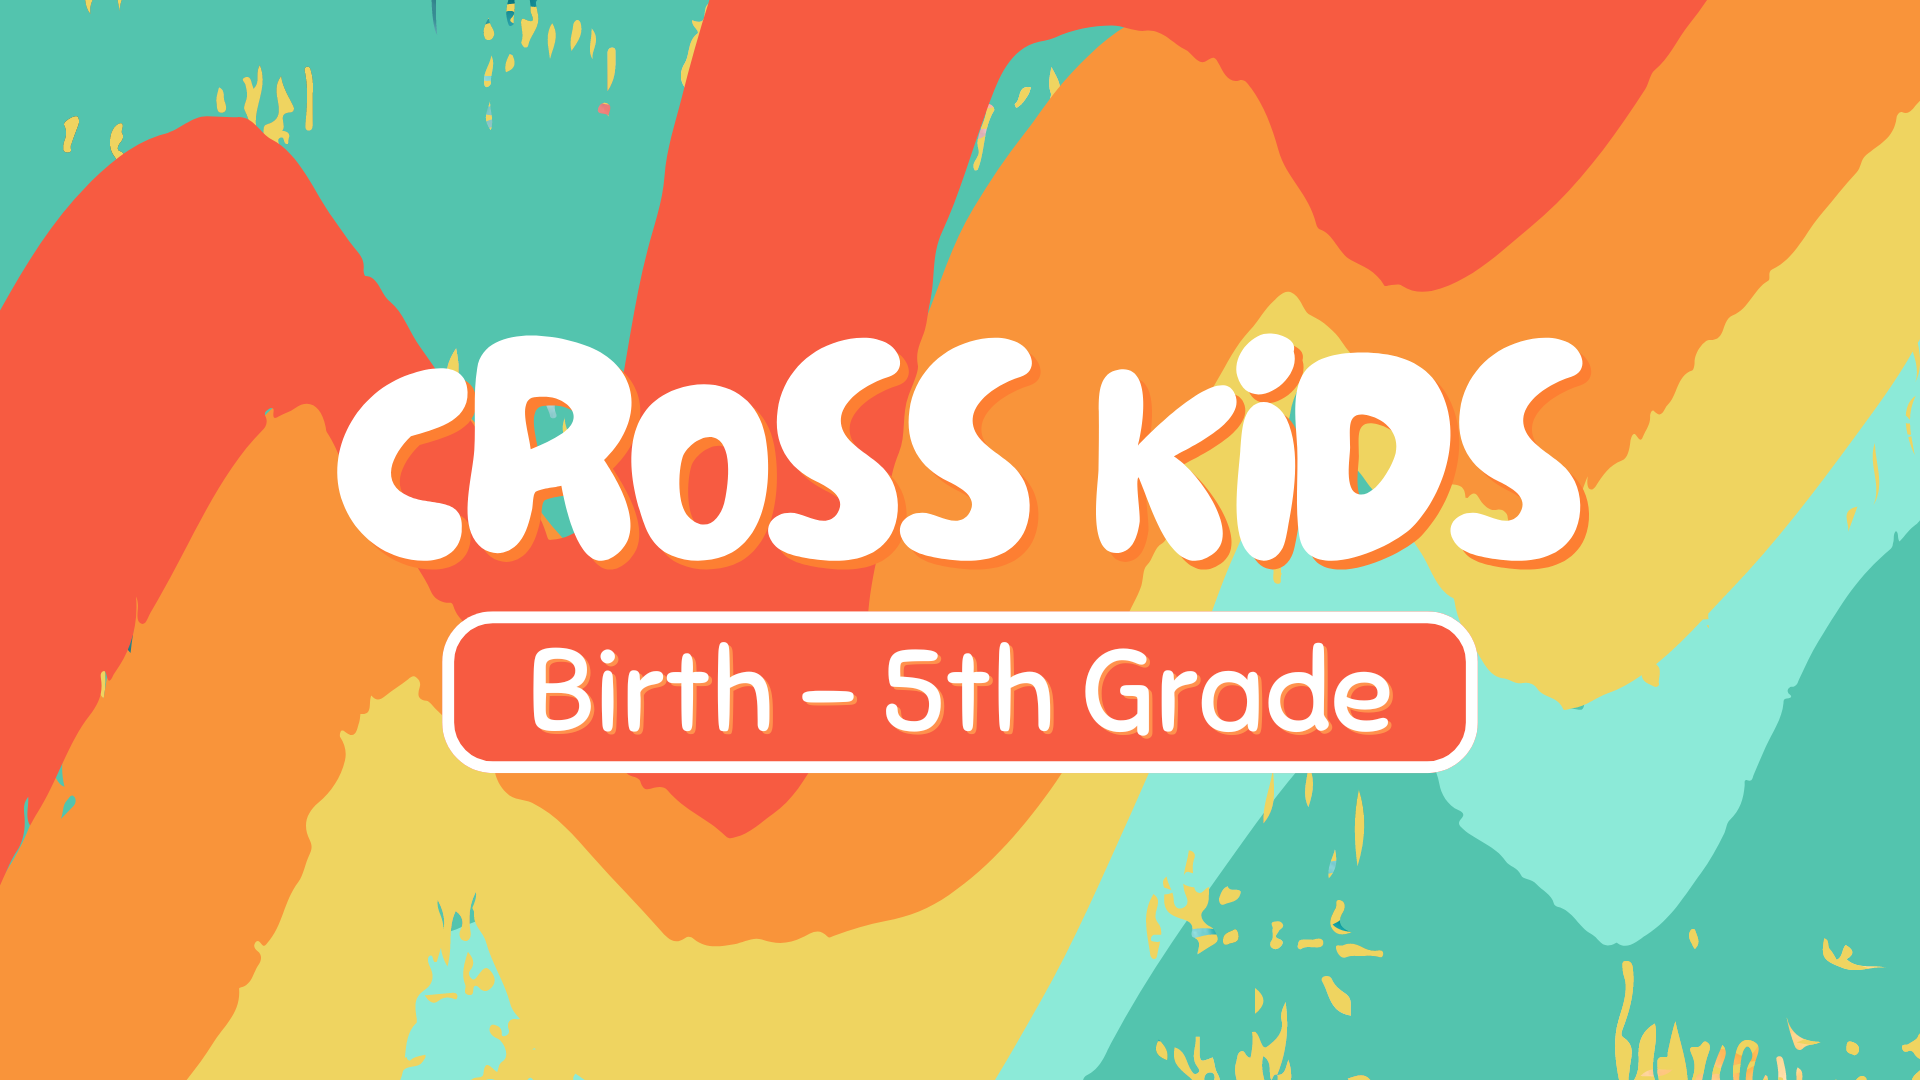 Website Cross Kids.png